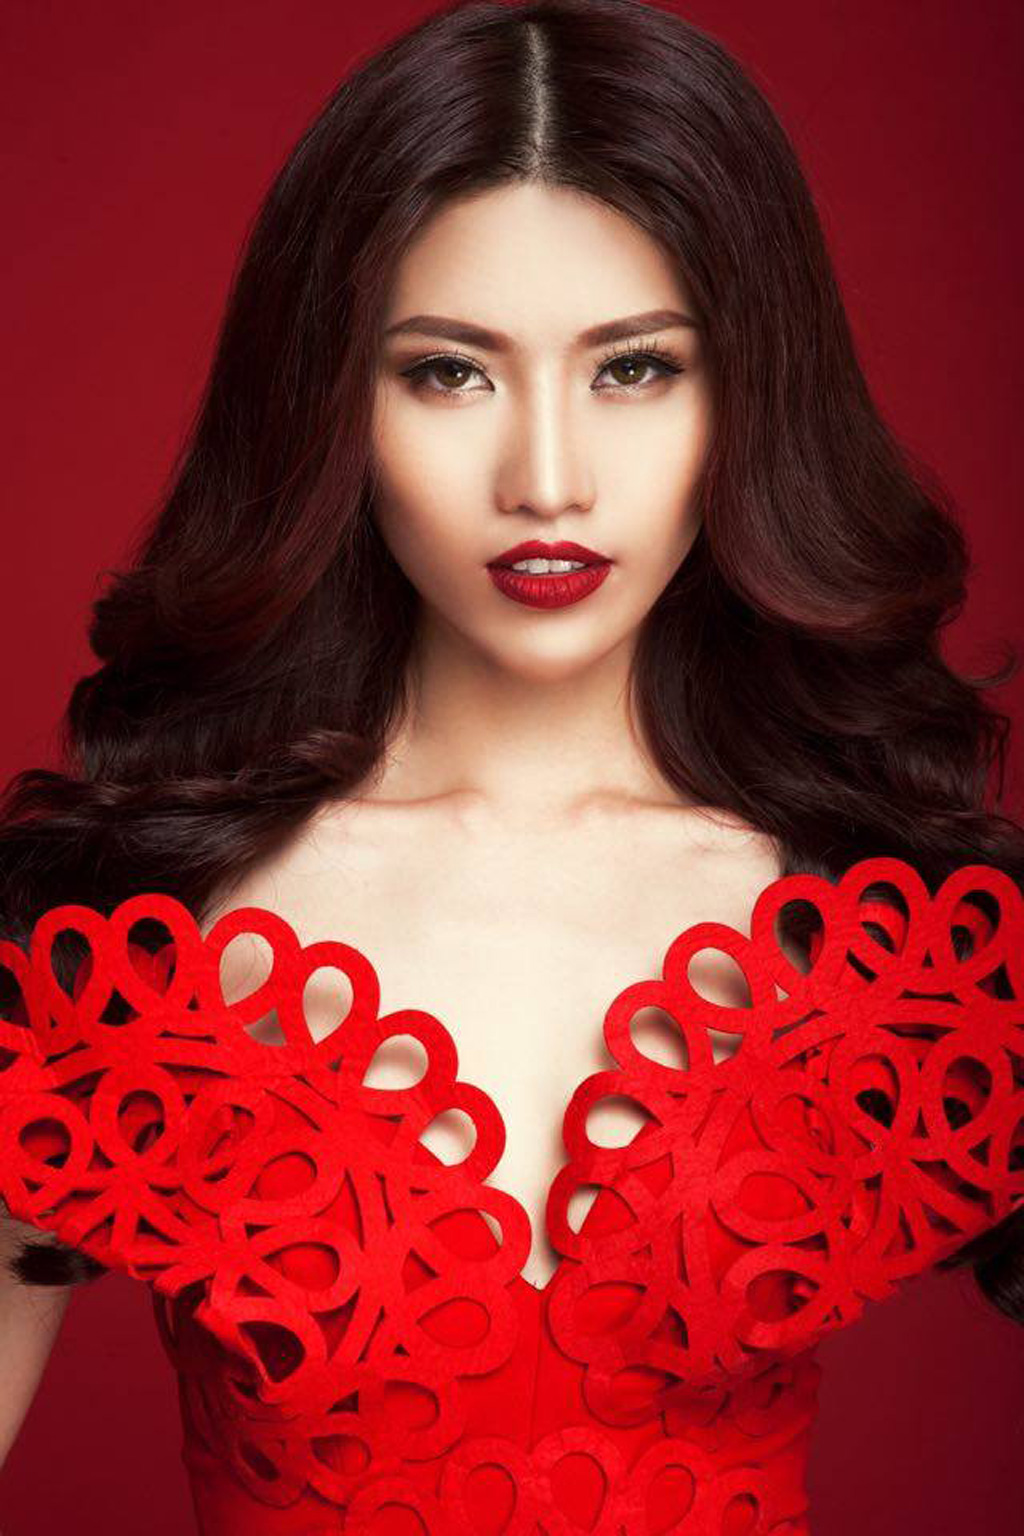 Người mẫu Quỳnh Châu: ‘Cát sê phụ thuộc vào bản thân người mẫu’